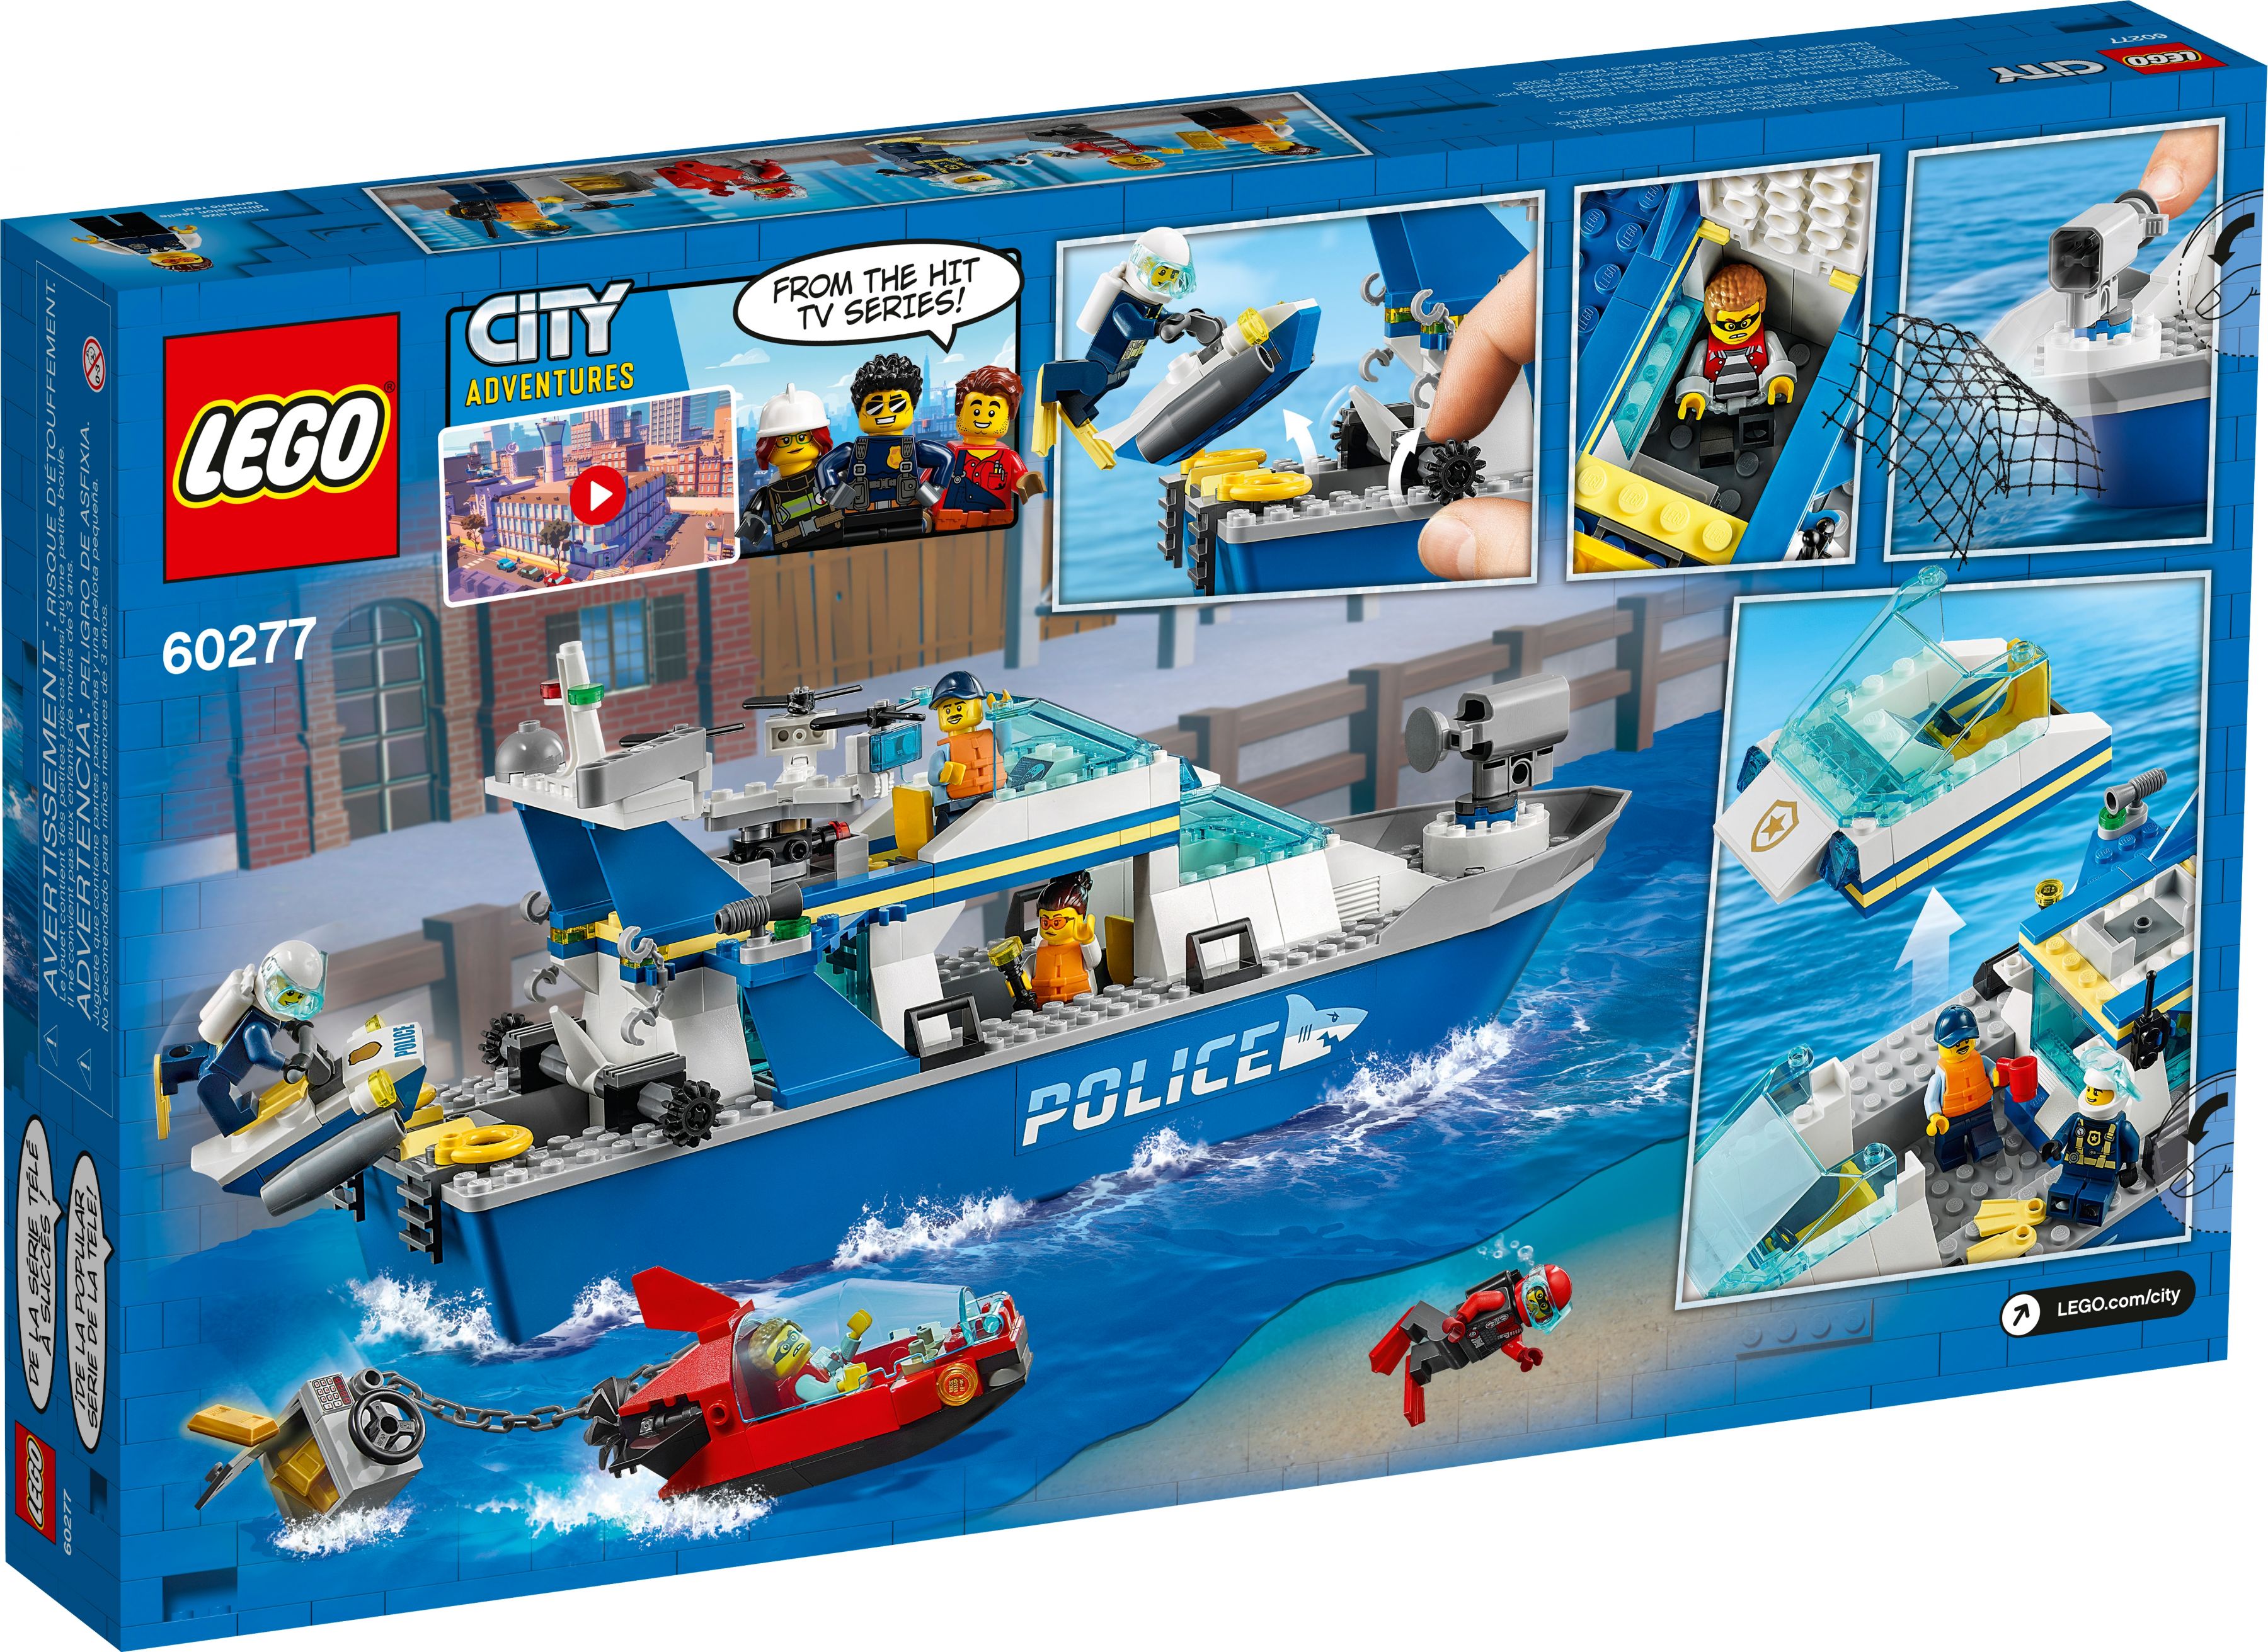 LEGO City 60277 Polizeiboot LEGO_60277_box5_v39.jpg